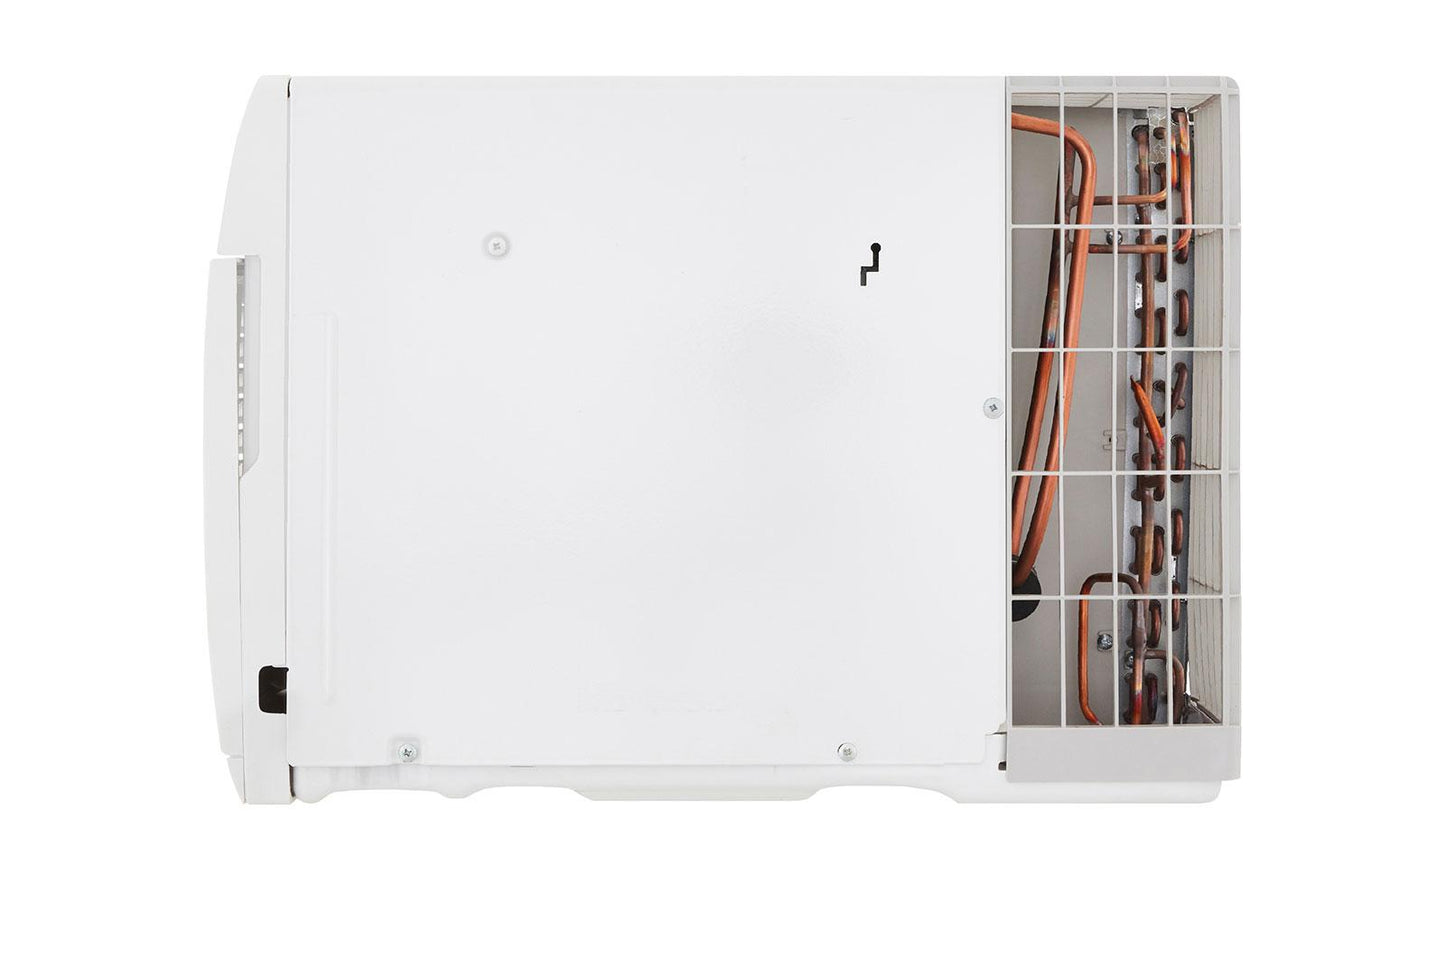 Lg LT1037HNR 10,000 Btu 230V Through-The-Wall Air Conditioner With Heat